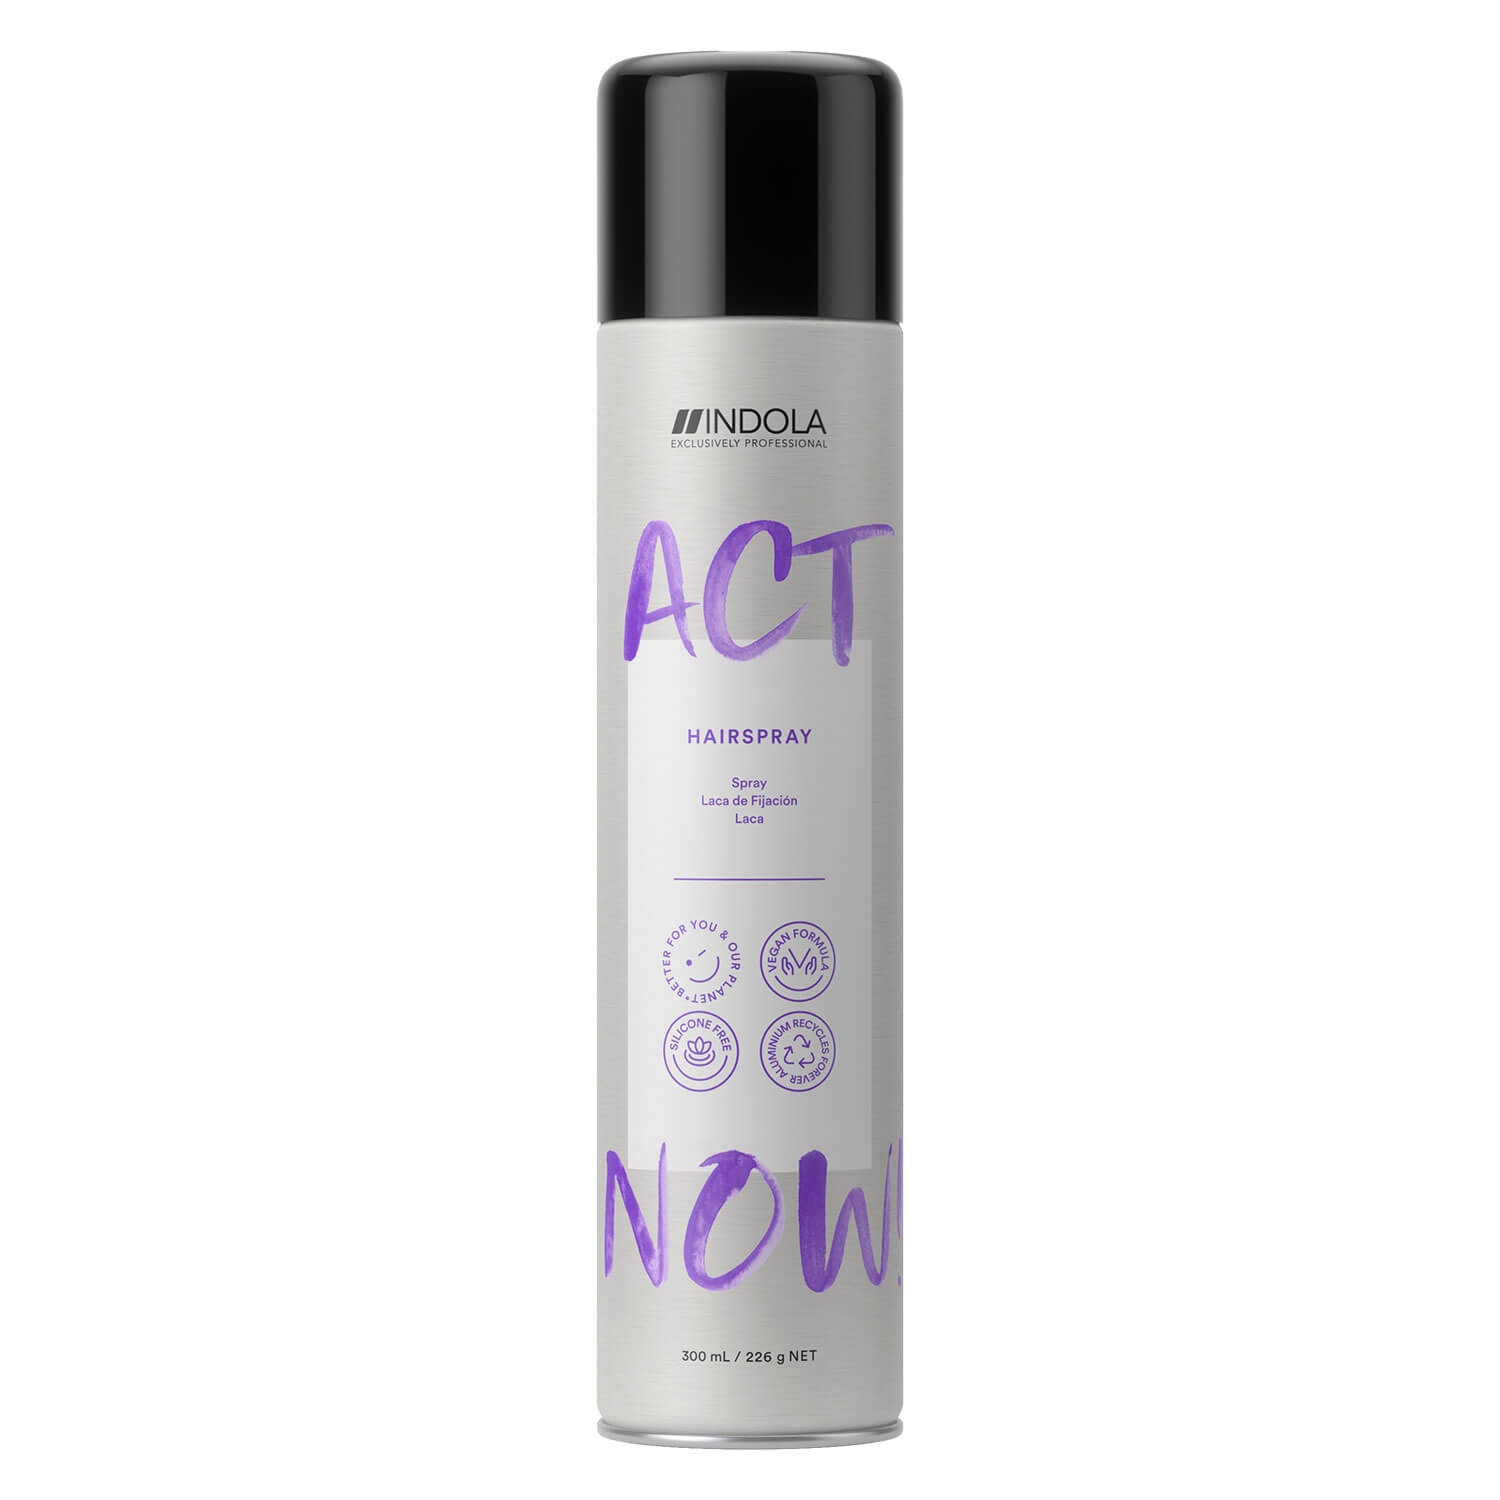 Produktbild von ACT NOW - Hairspray